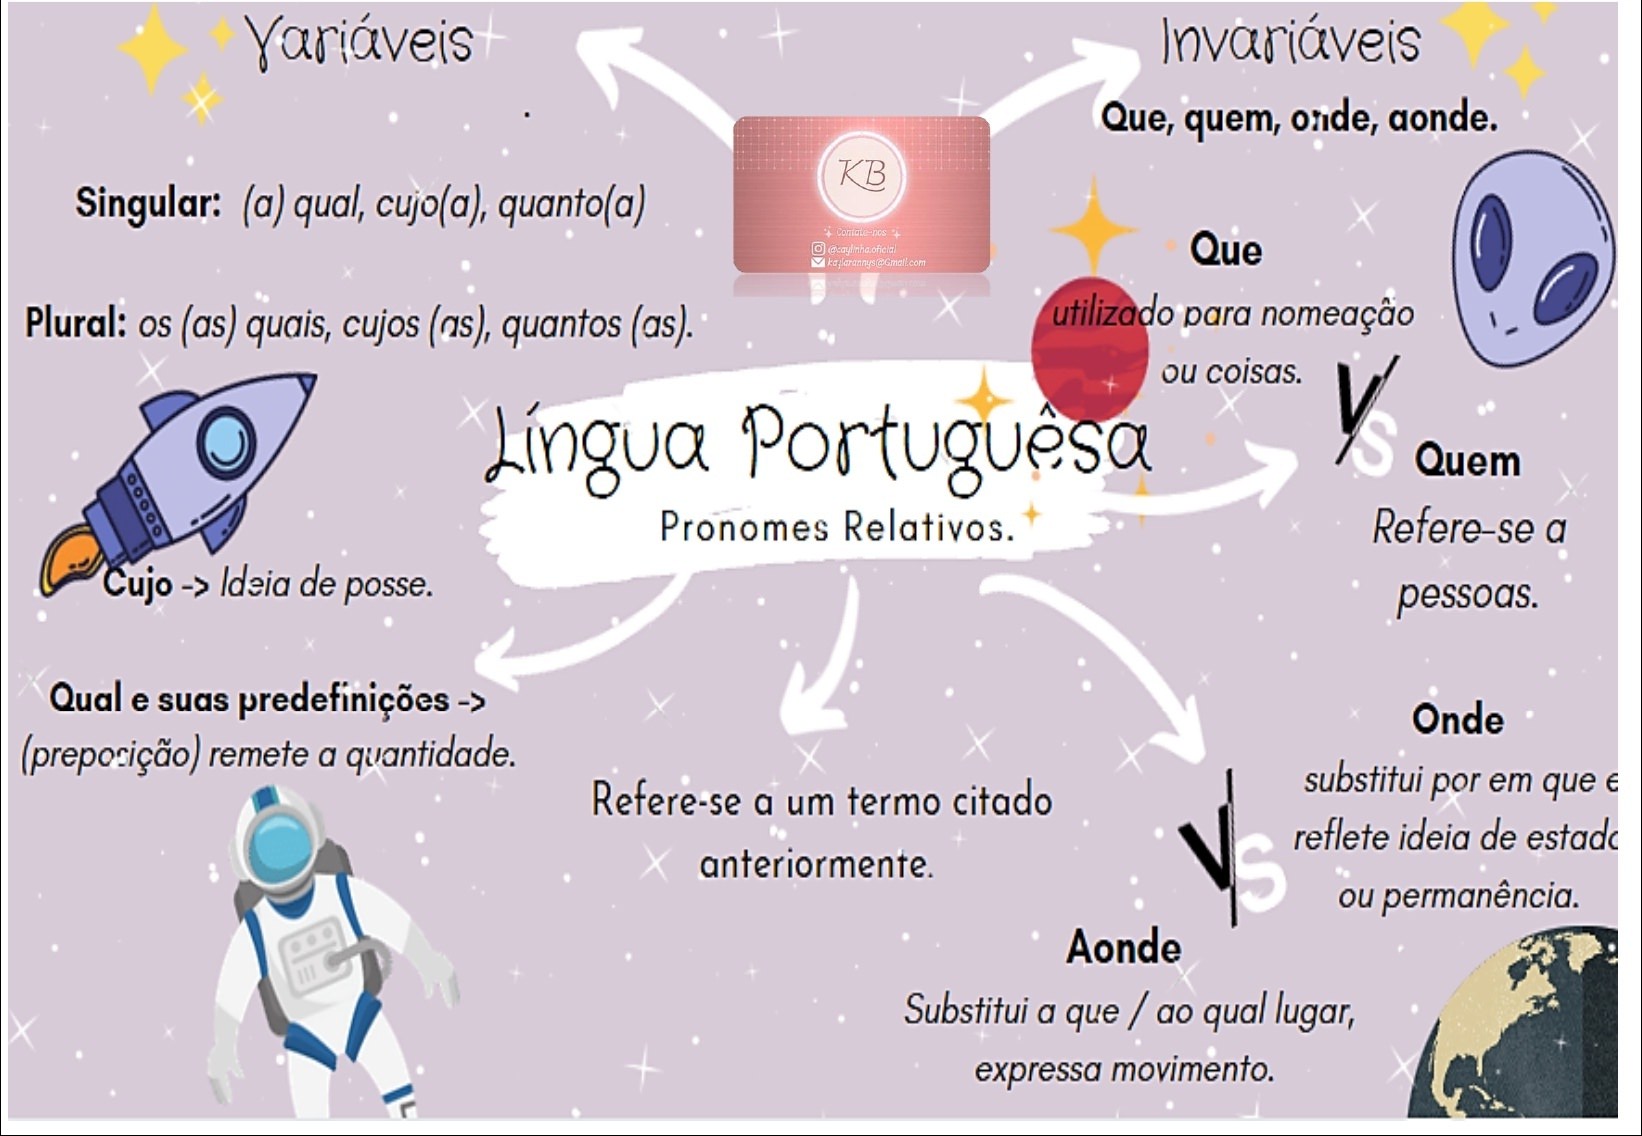 Língua Portuguesa - A palavra onde, como pronome relativo, só